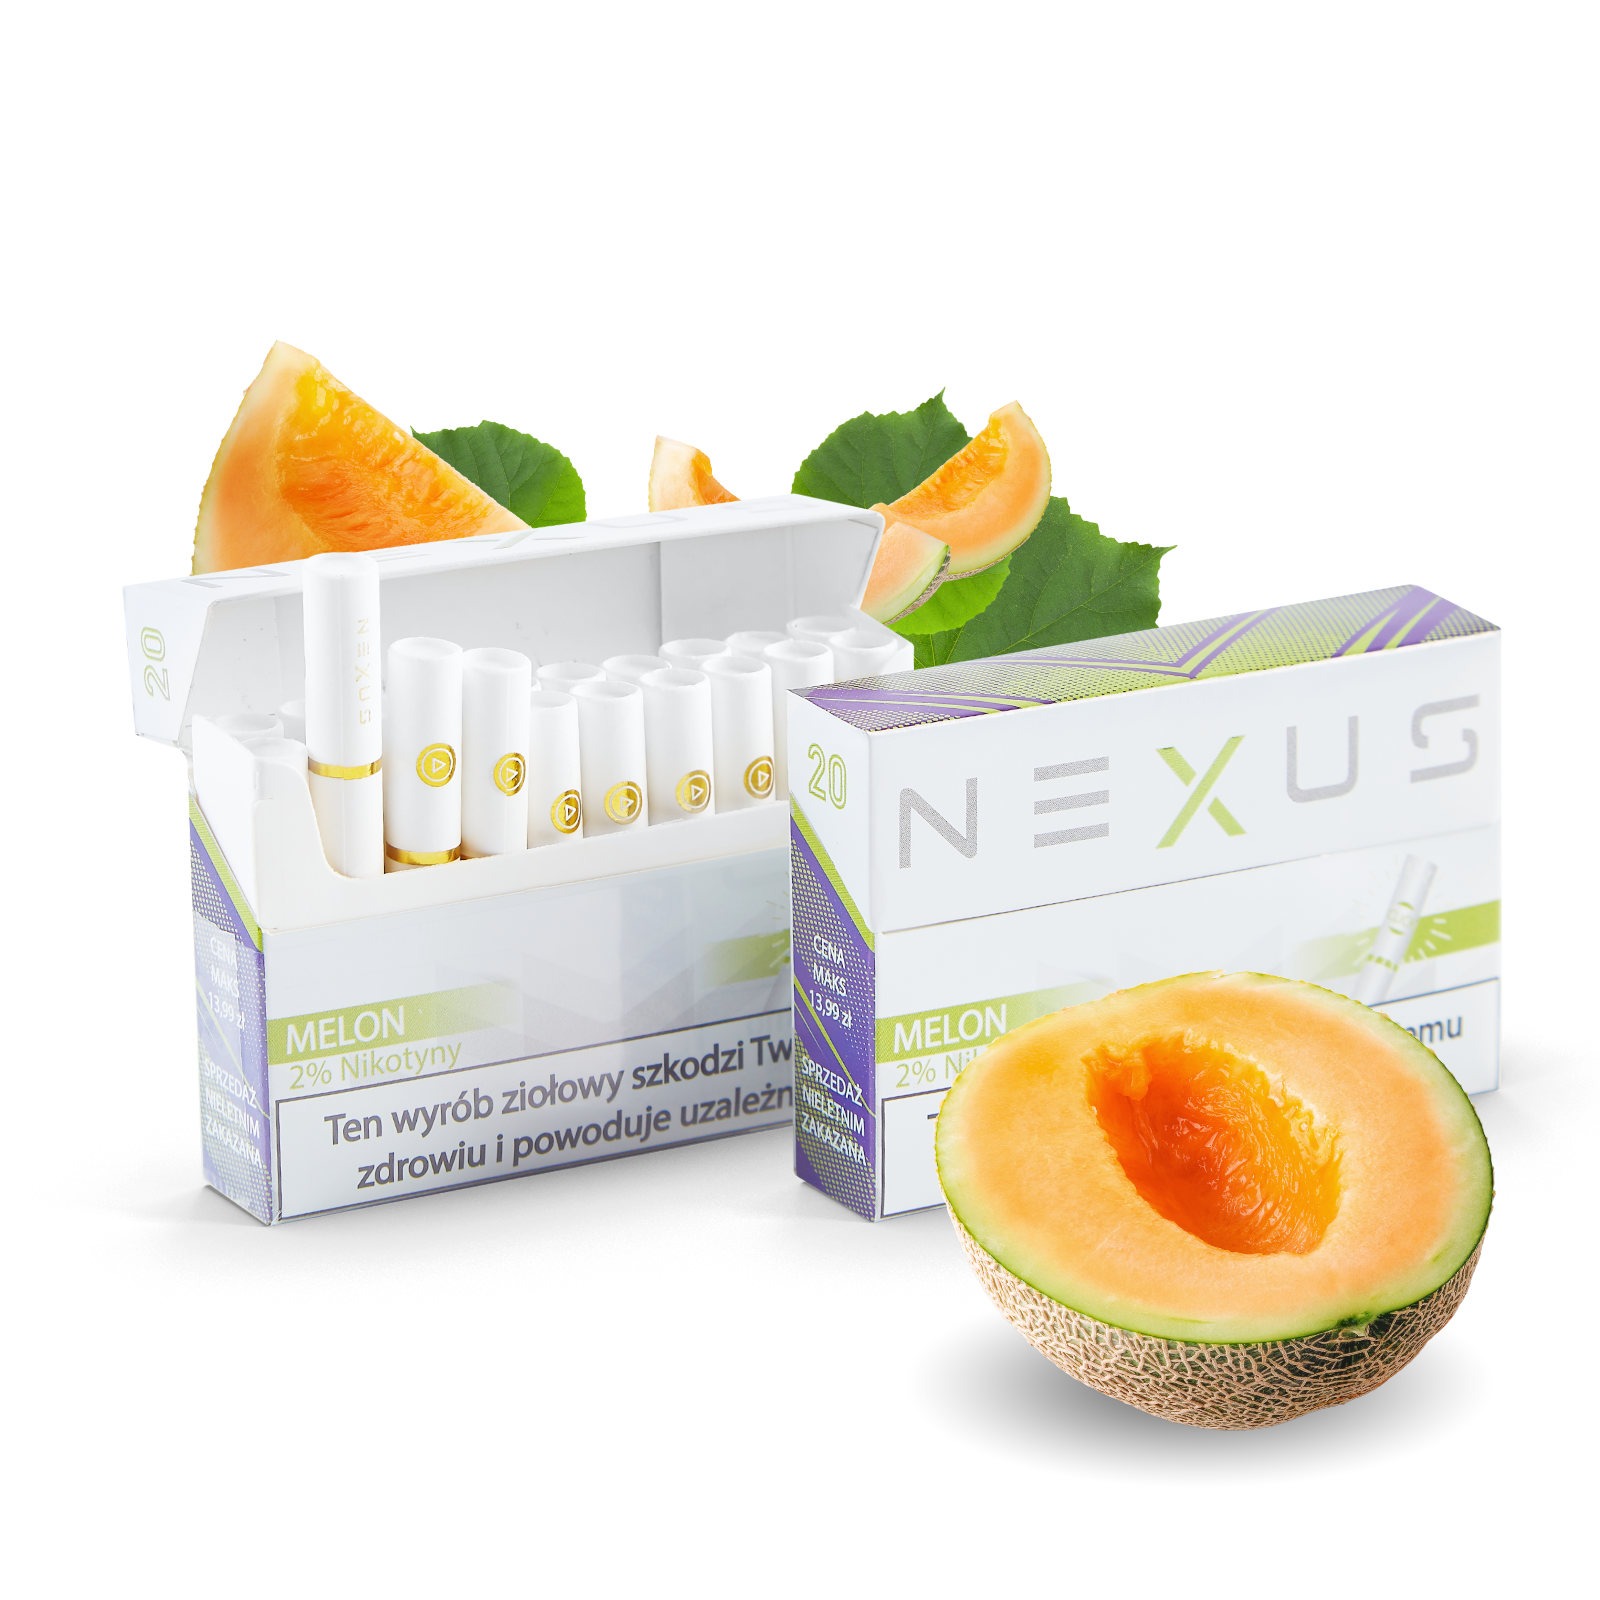 Wkłady do podgrzewacza NEXUS Melon z nikotyną oraz bez nikotyny do podgrzewaczy takich jak IQOS i NEXONE